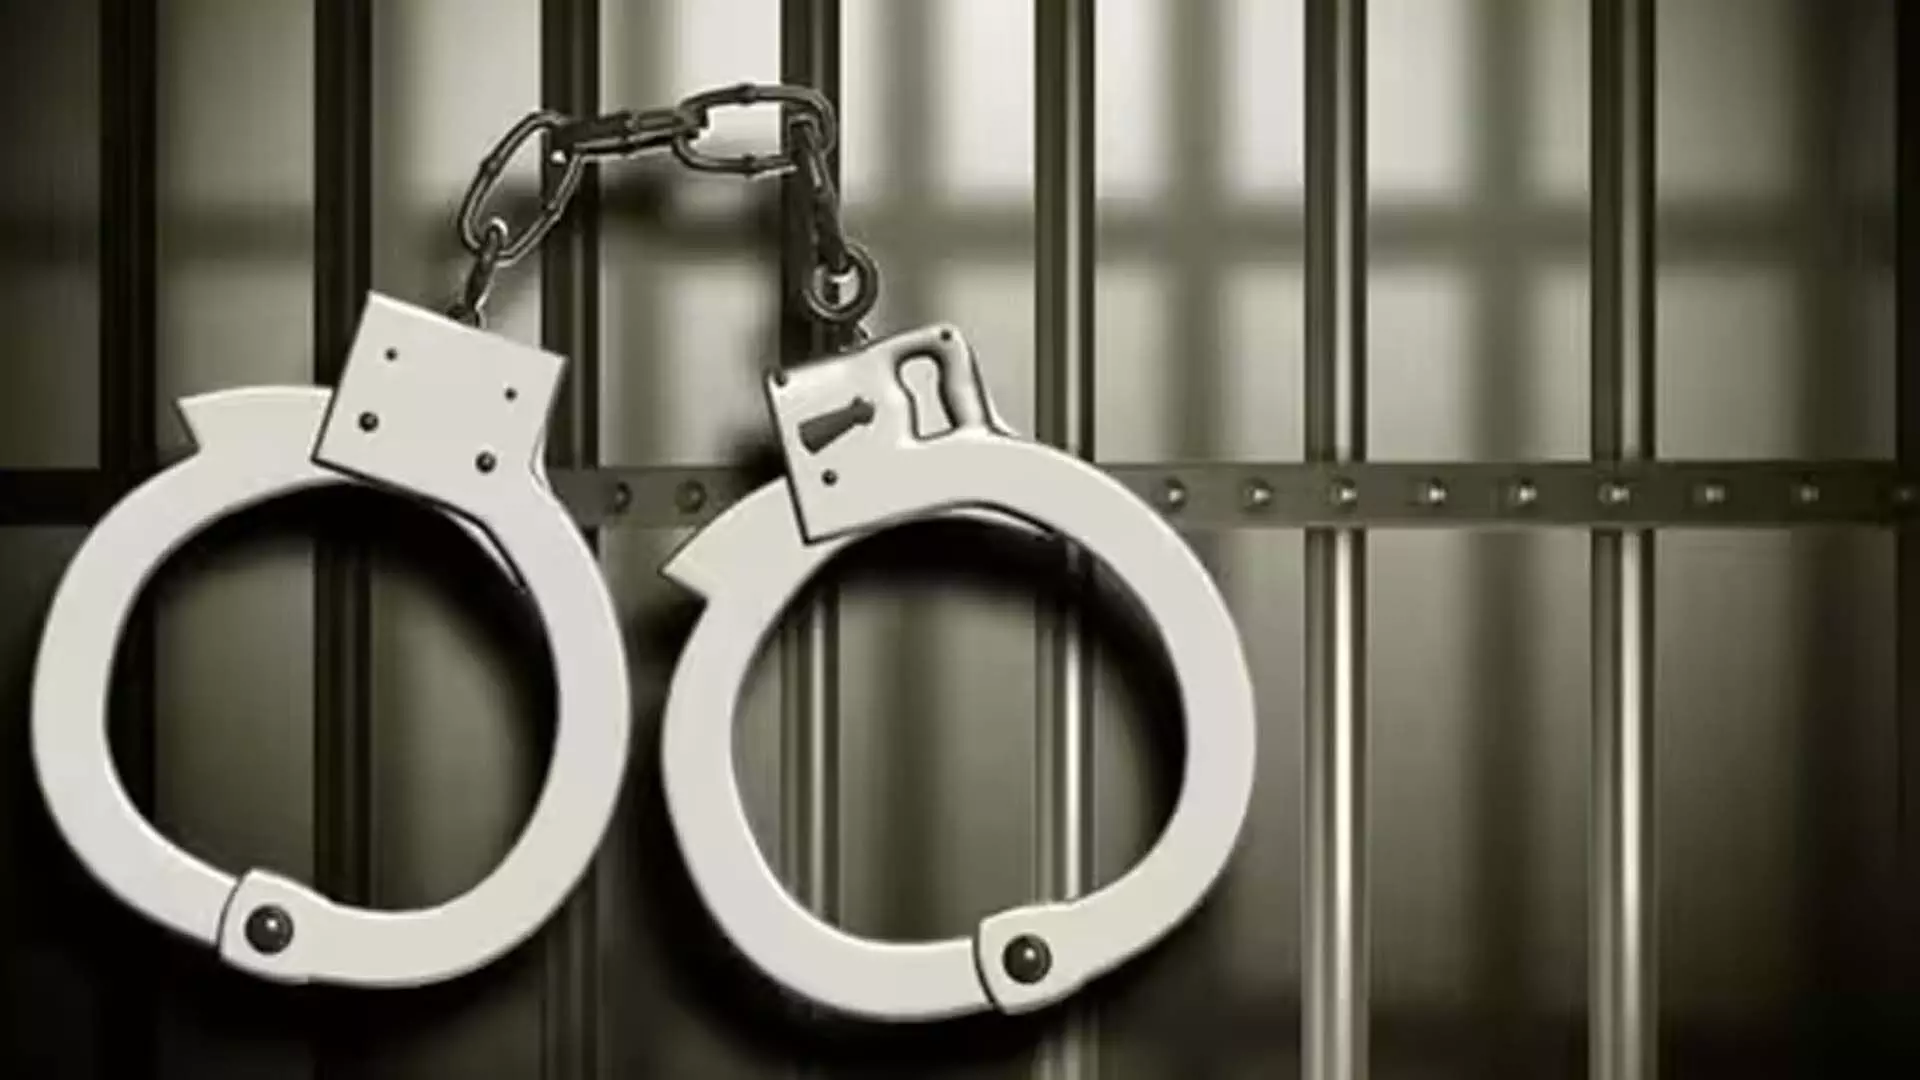 वीलॉग के लिए हवाईअड्डे के अंदर 24 घंटे रुकने का नाटक करने के आरोप में बेंगलुरु यूट्यूबर गिरफ्तार